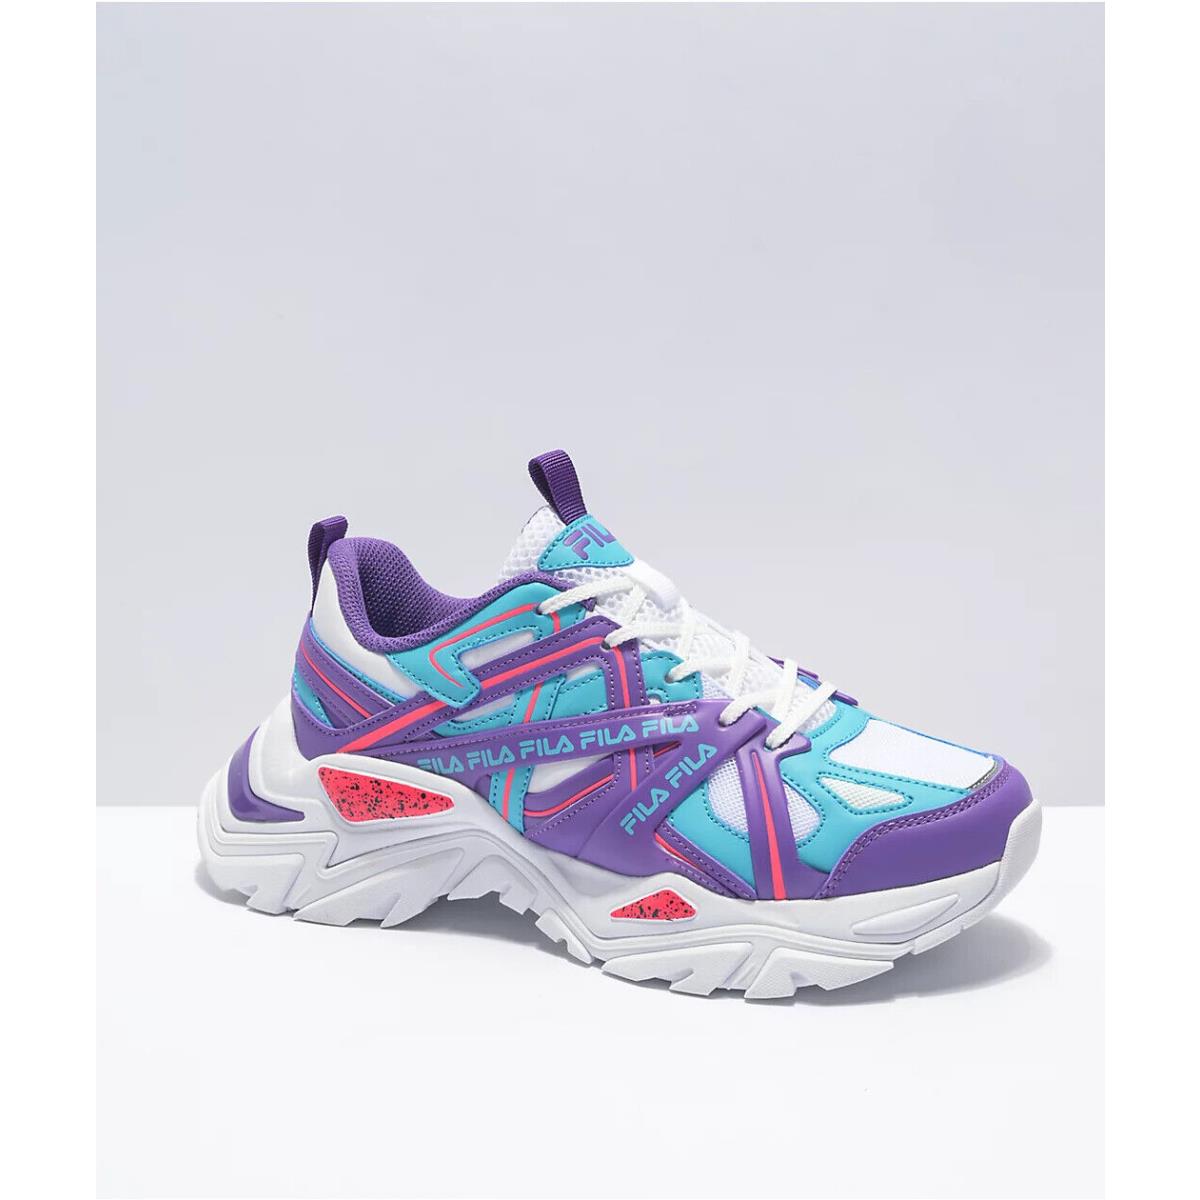 Fila Electrove 2 Youth/kids - White/purple/scuba - Shoe Sneaker - Size 6 / 6Y